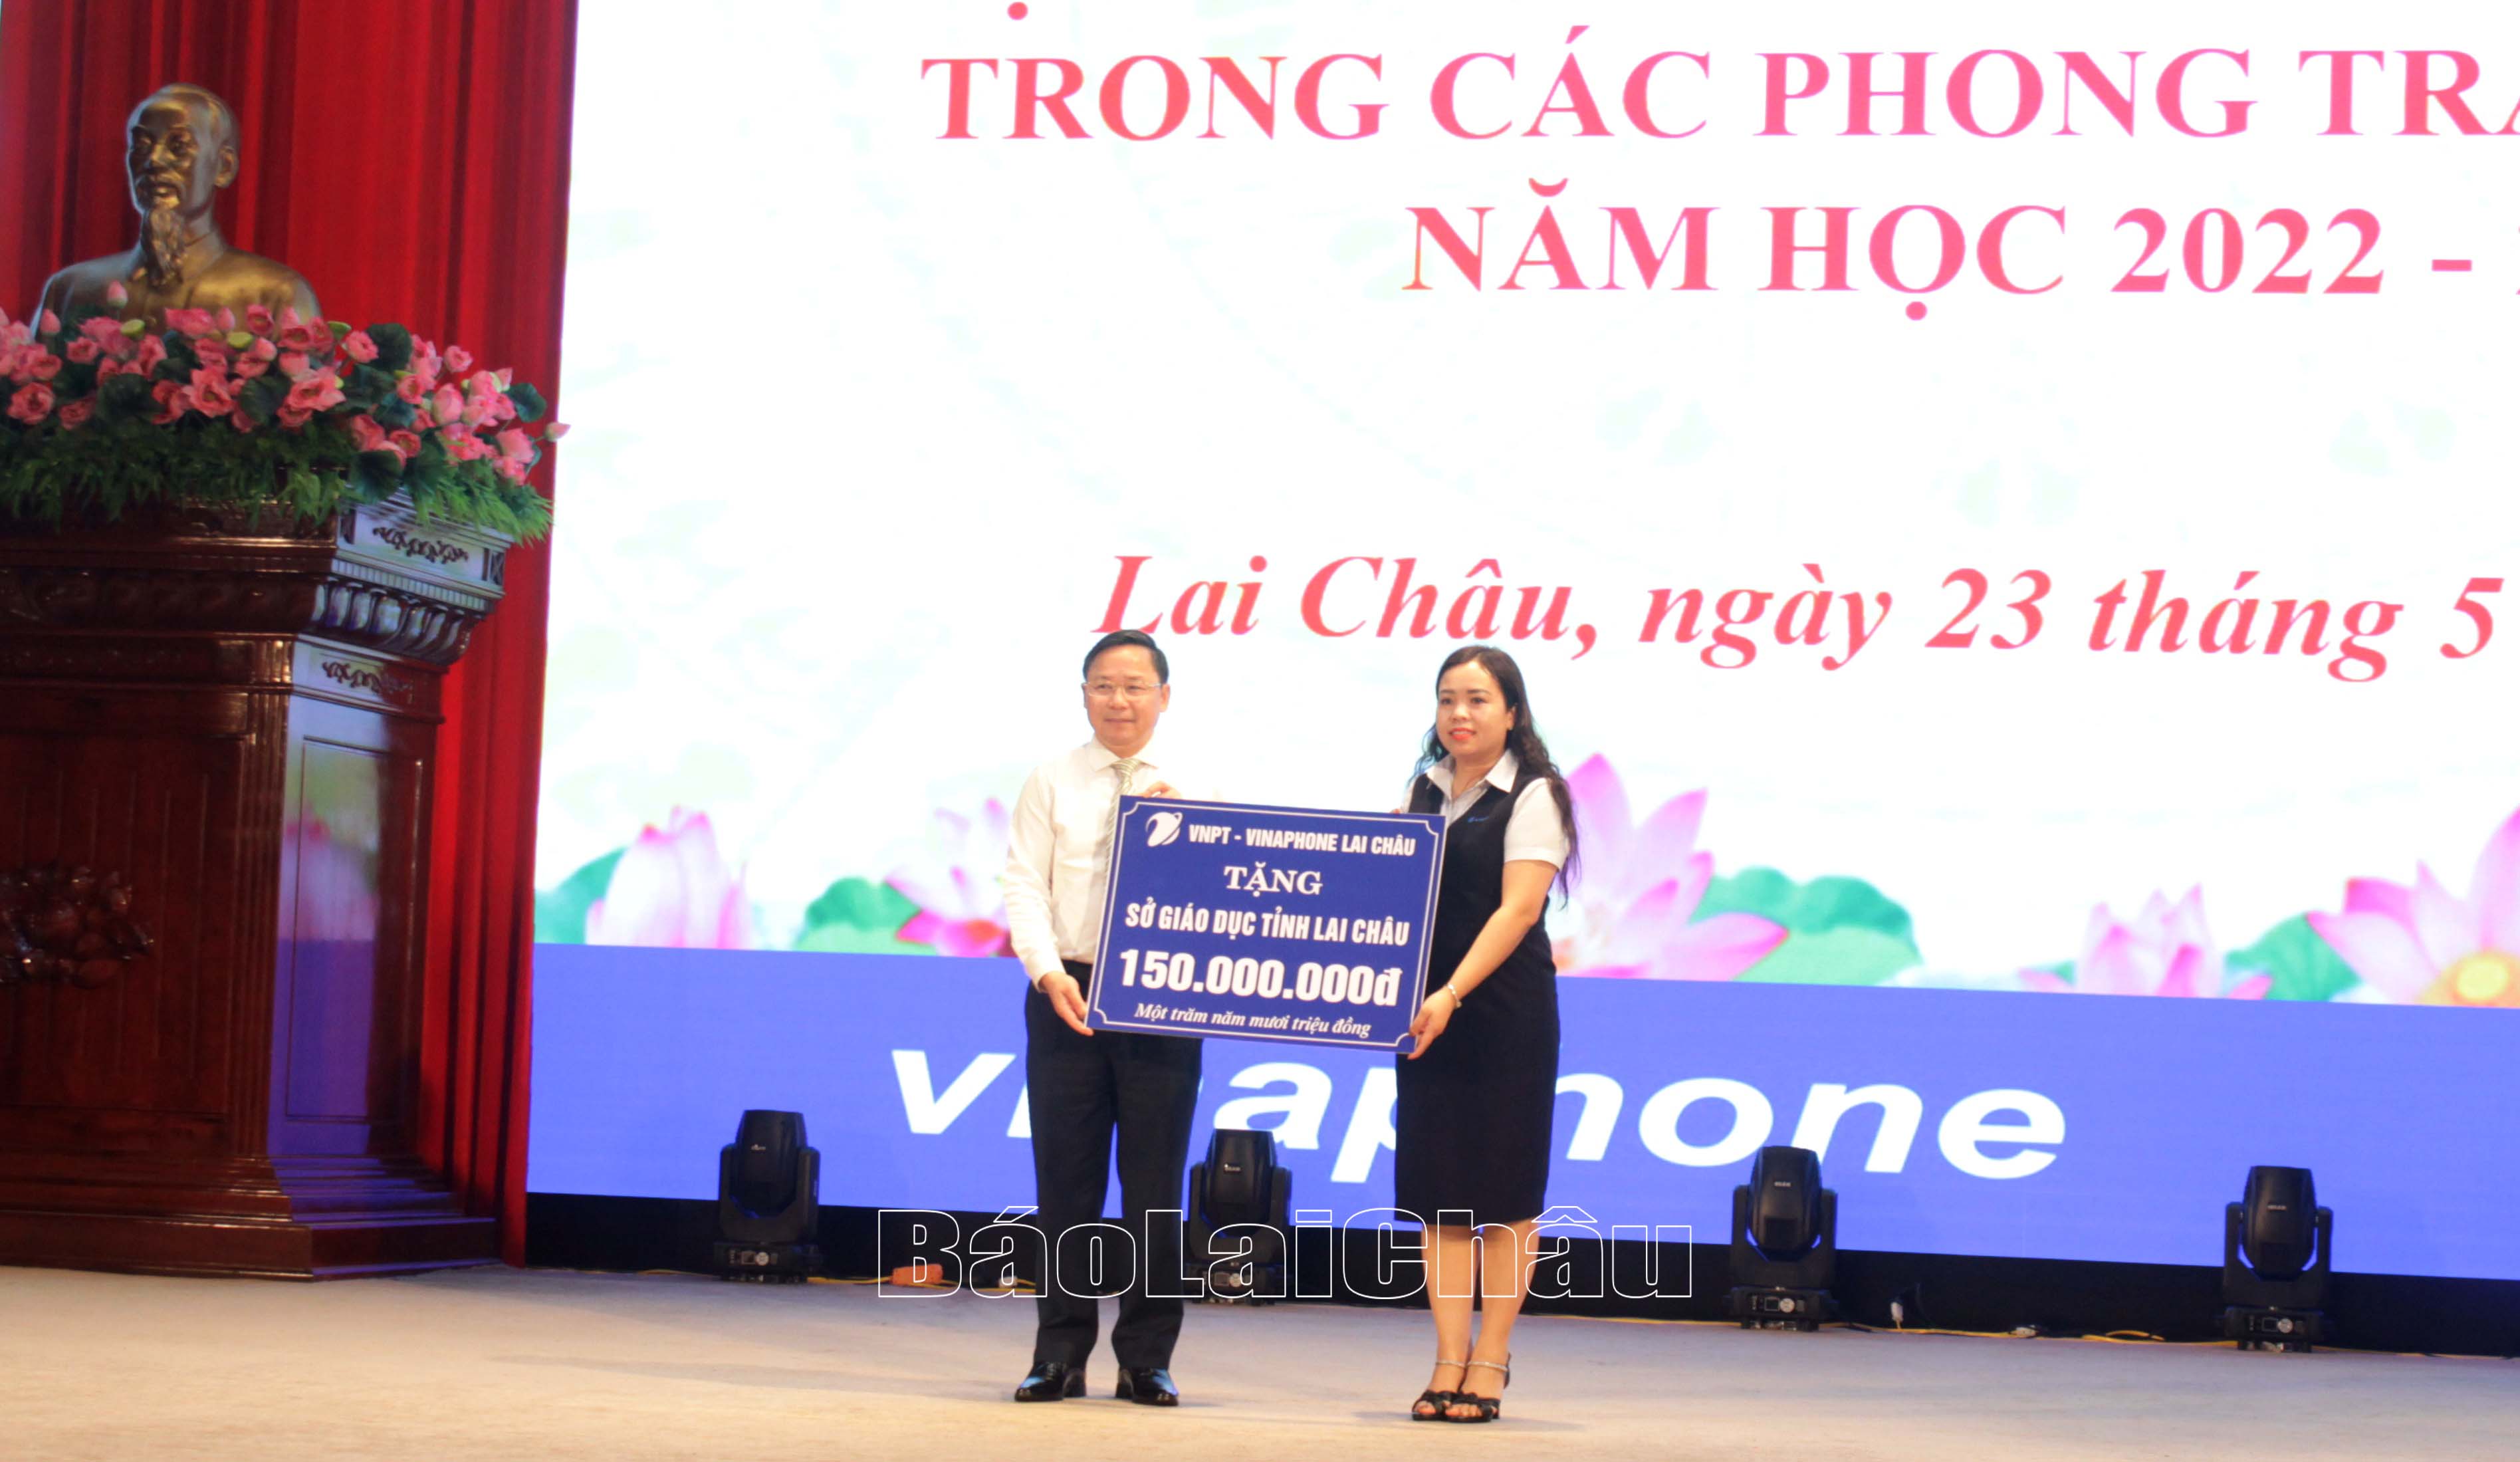 Bà Pờ Thị Hiền - Trưởng Đại diện, Giám đốc VNPT Lai Châu tặng Sở GD&ĐT tỉnh Lai Châu 150 triệu đồng.